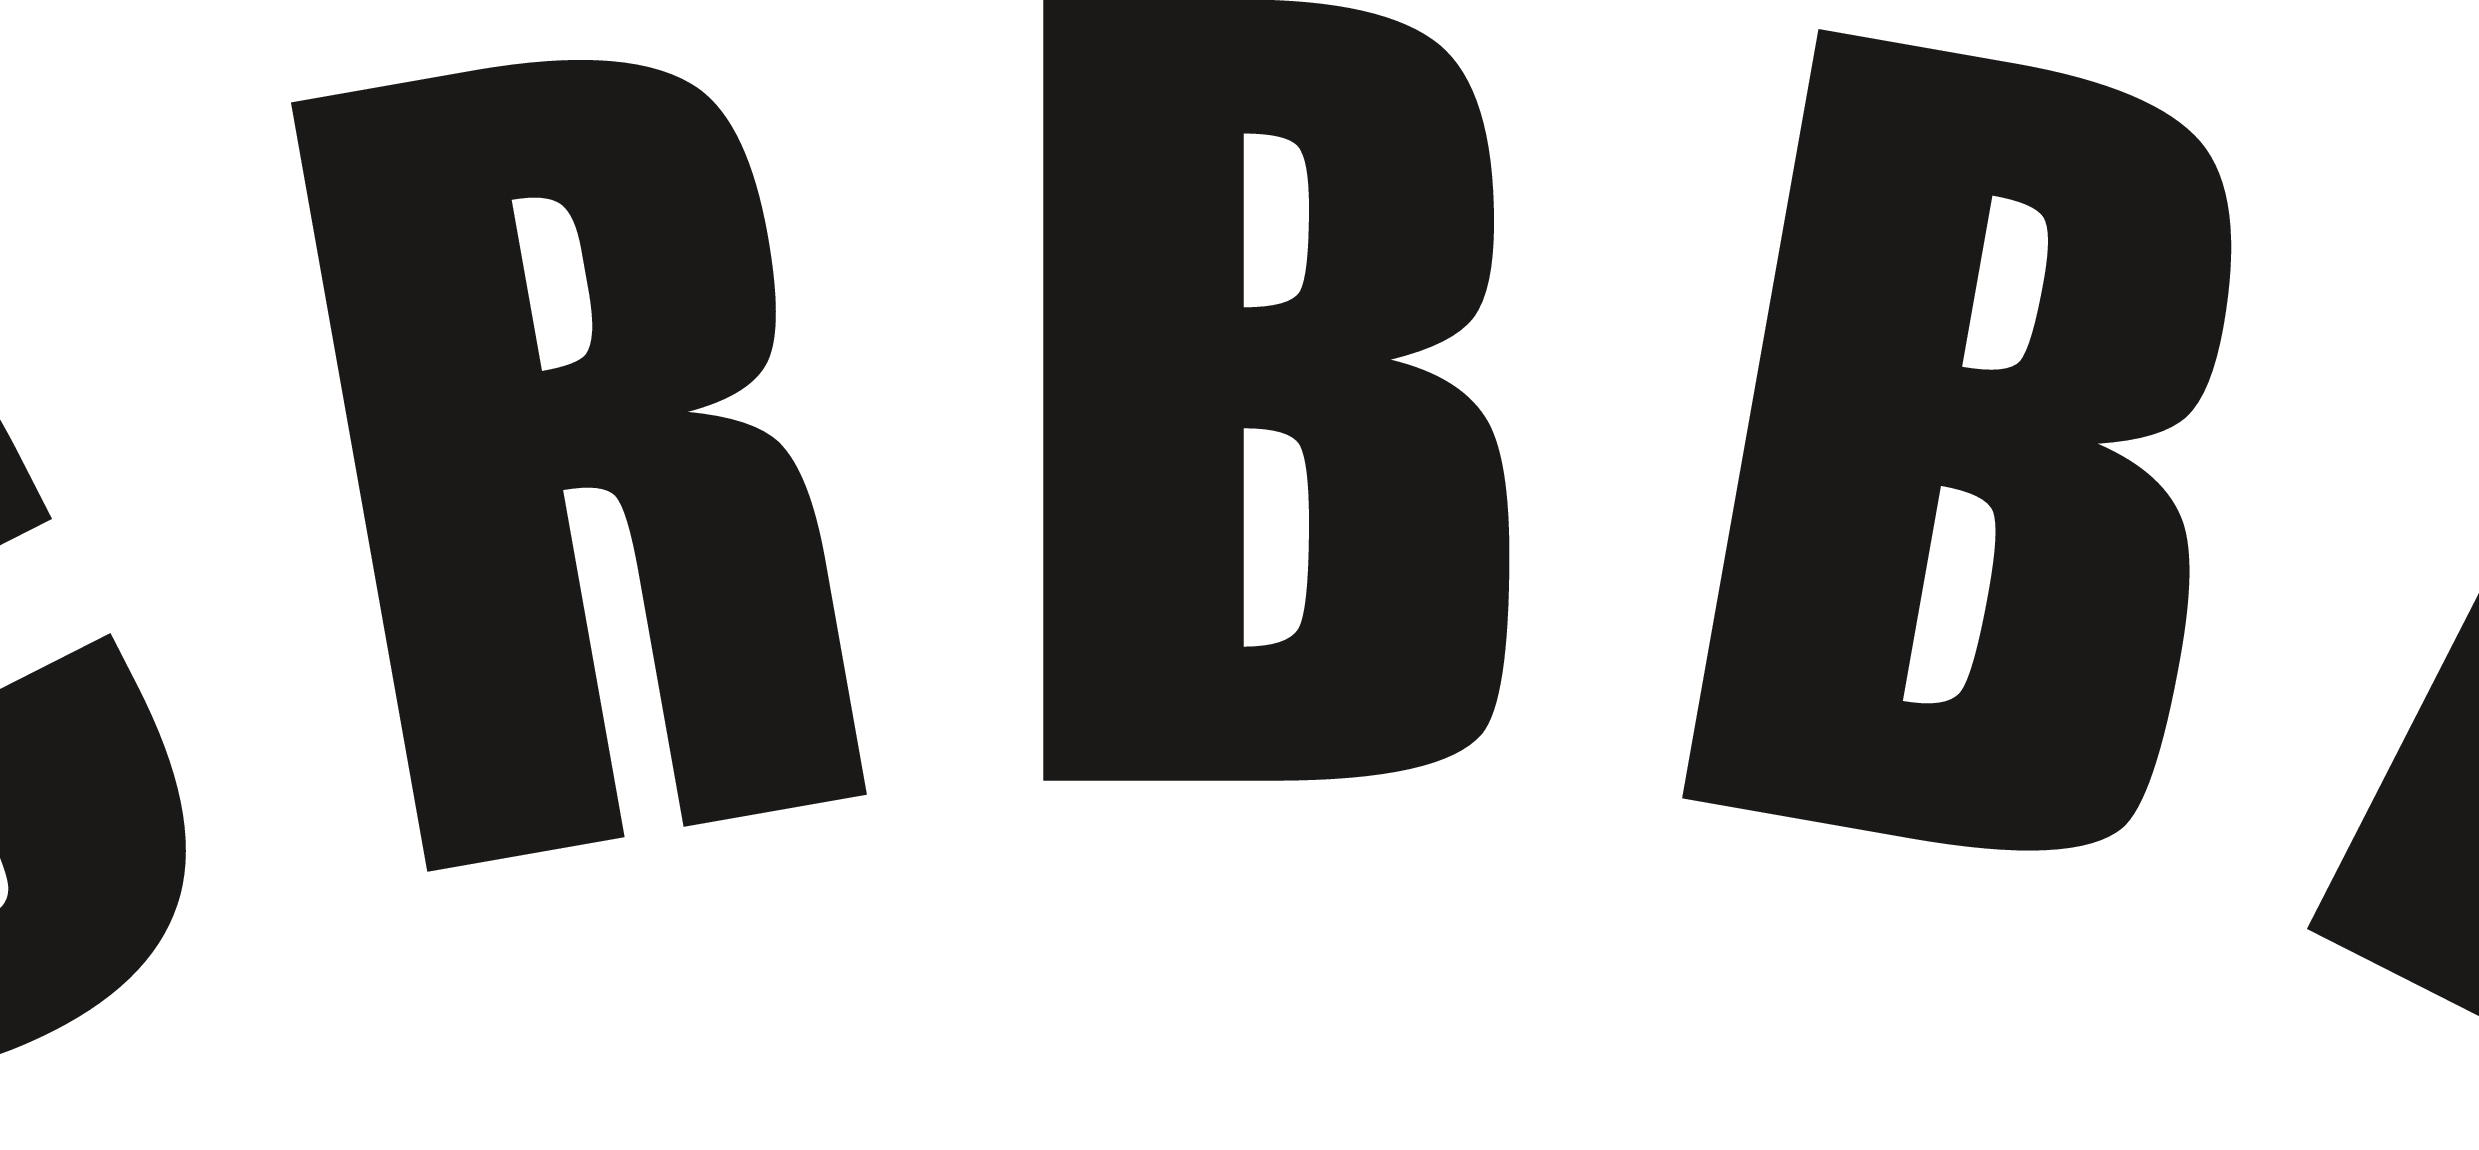 CRBBK Logo logo png download